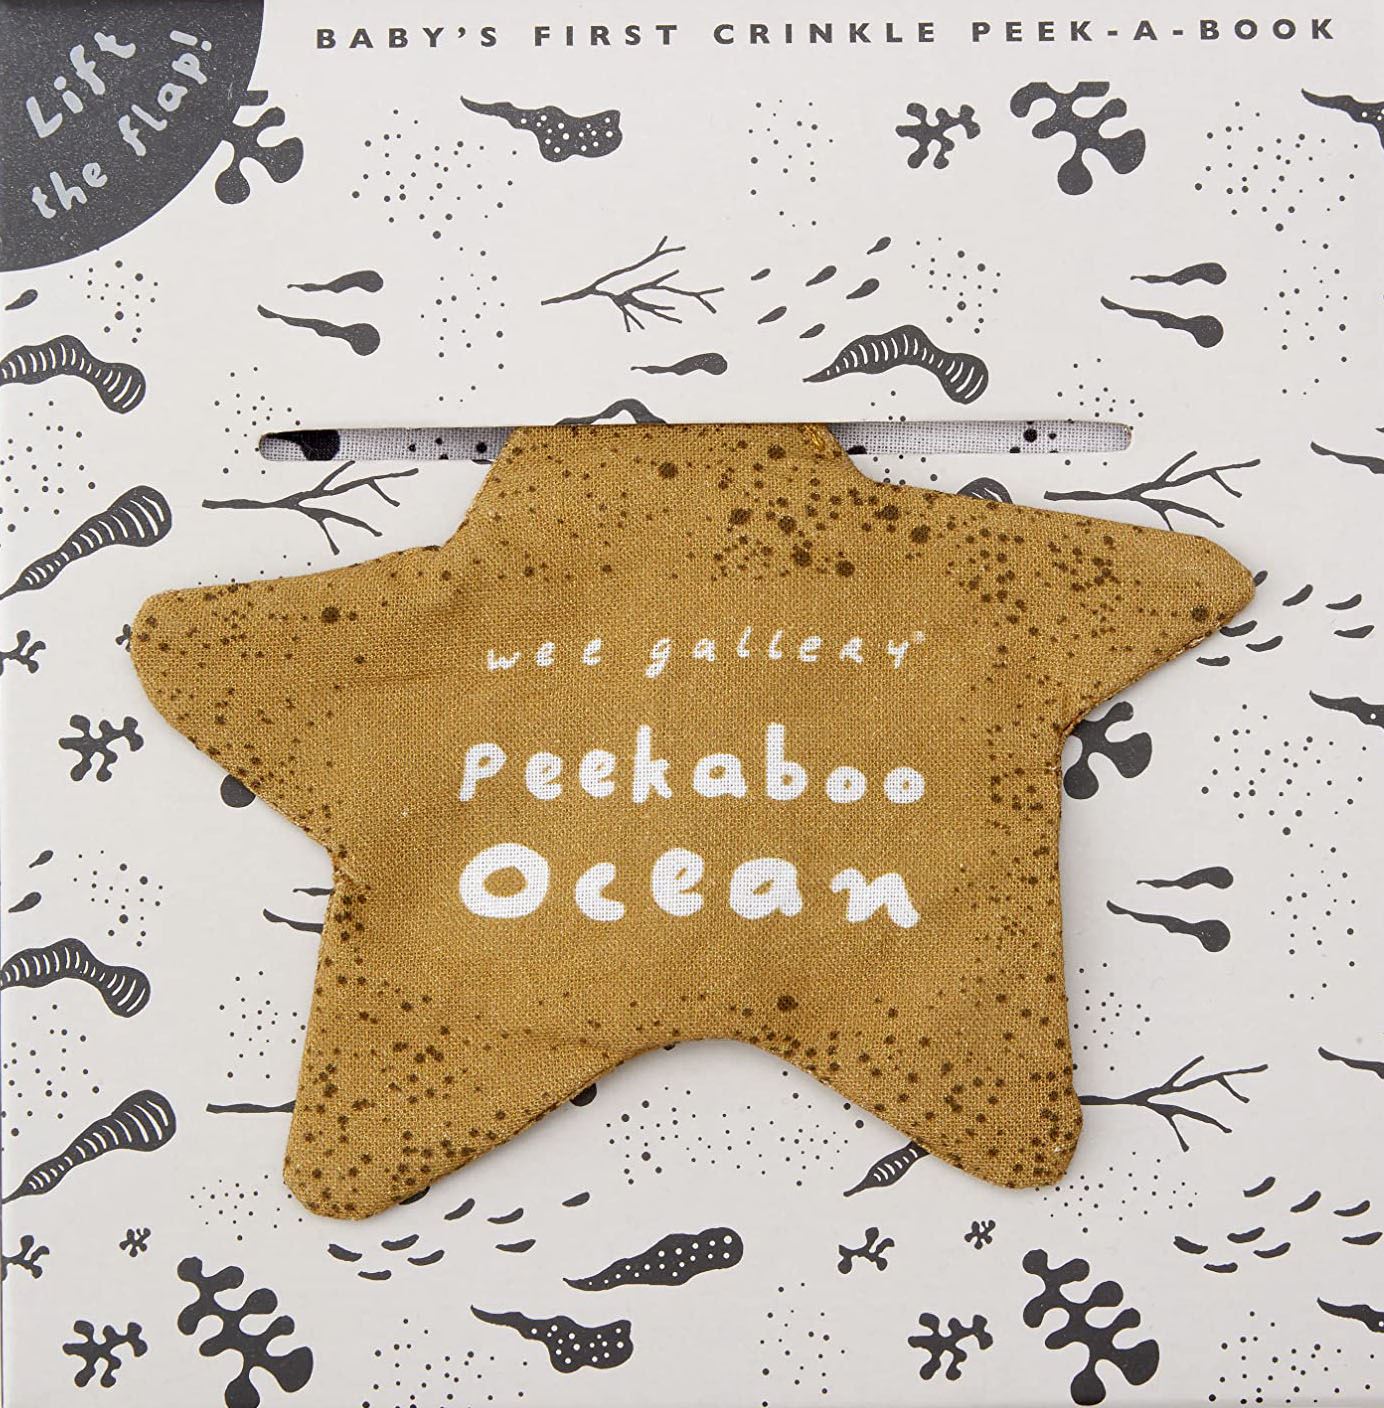 Peekaboo Ocean Crinkle Book